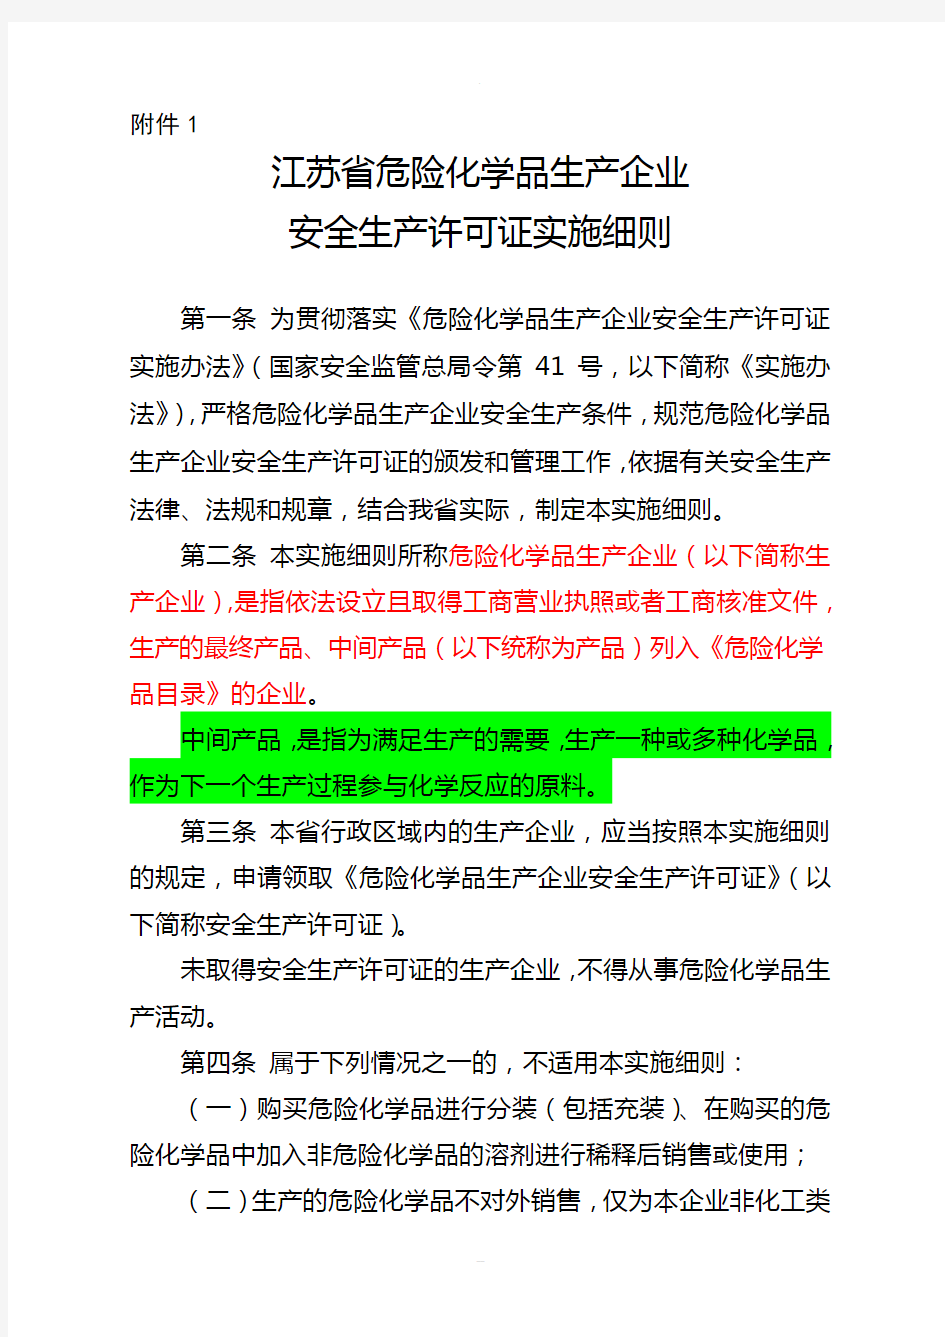 《江苏省危险化学品生产企业安全生产许可证实施细则》